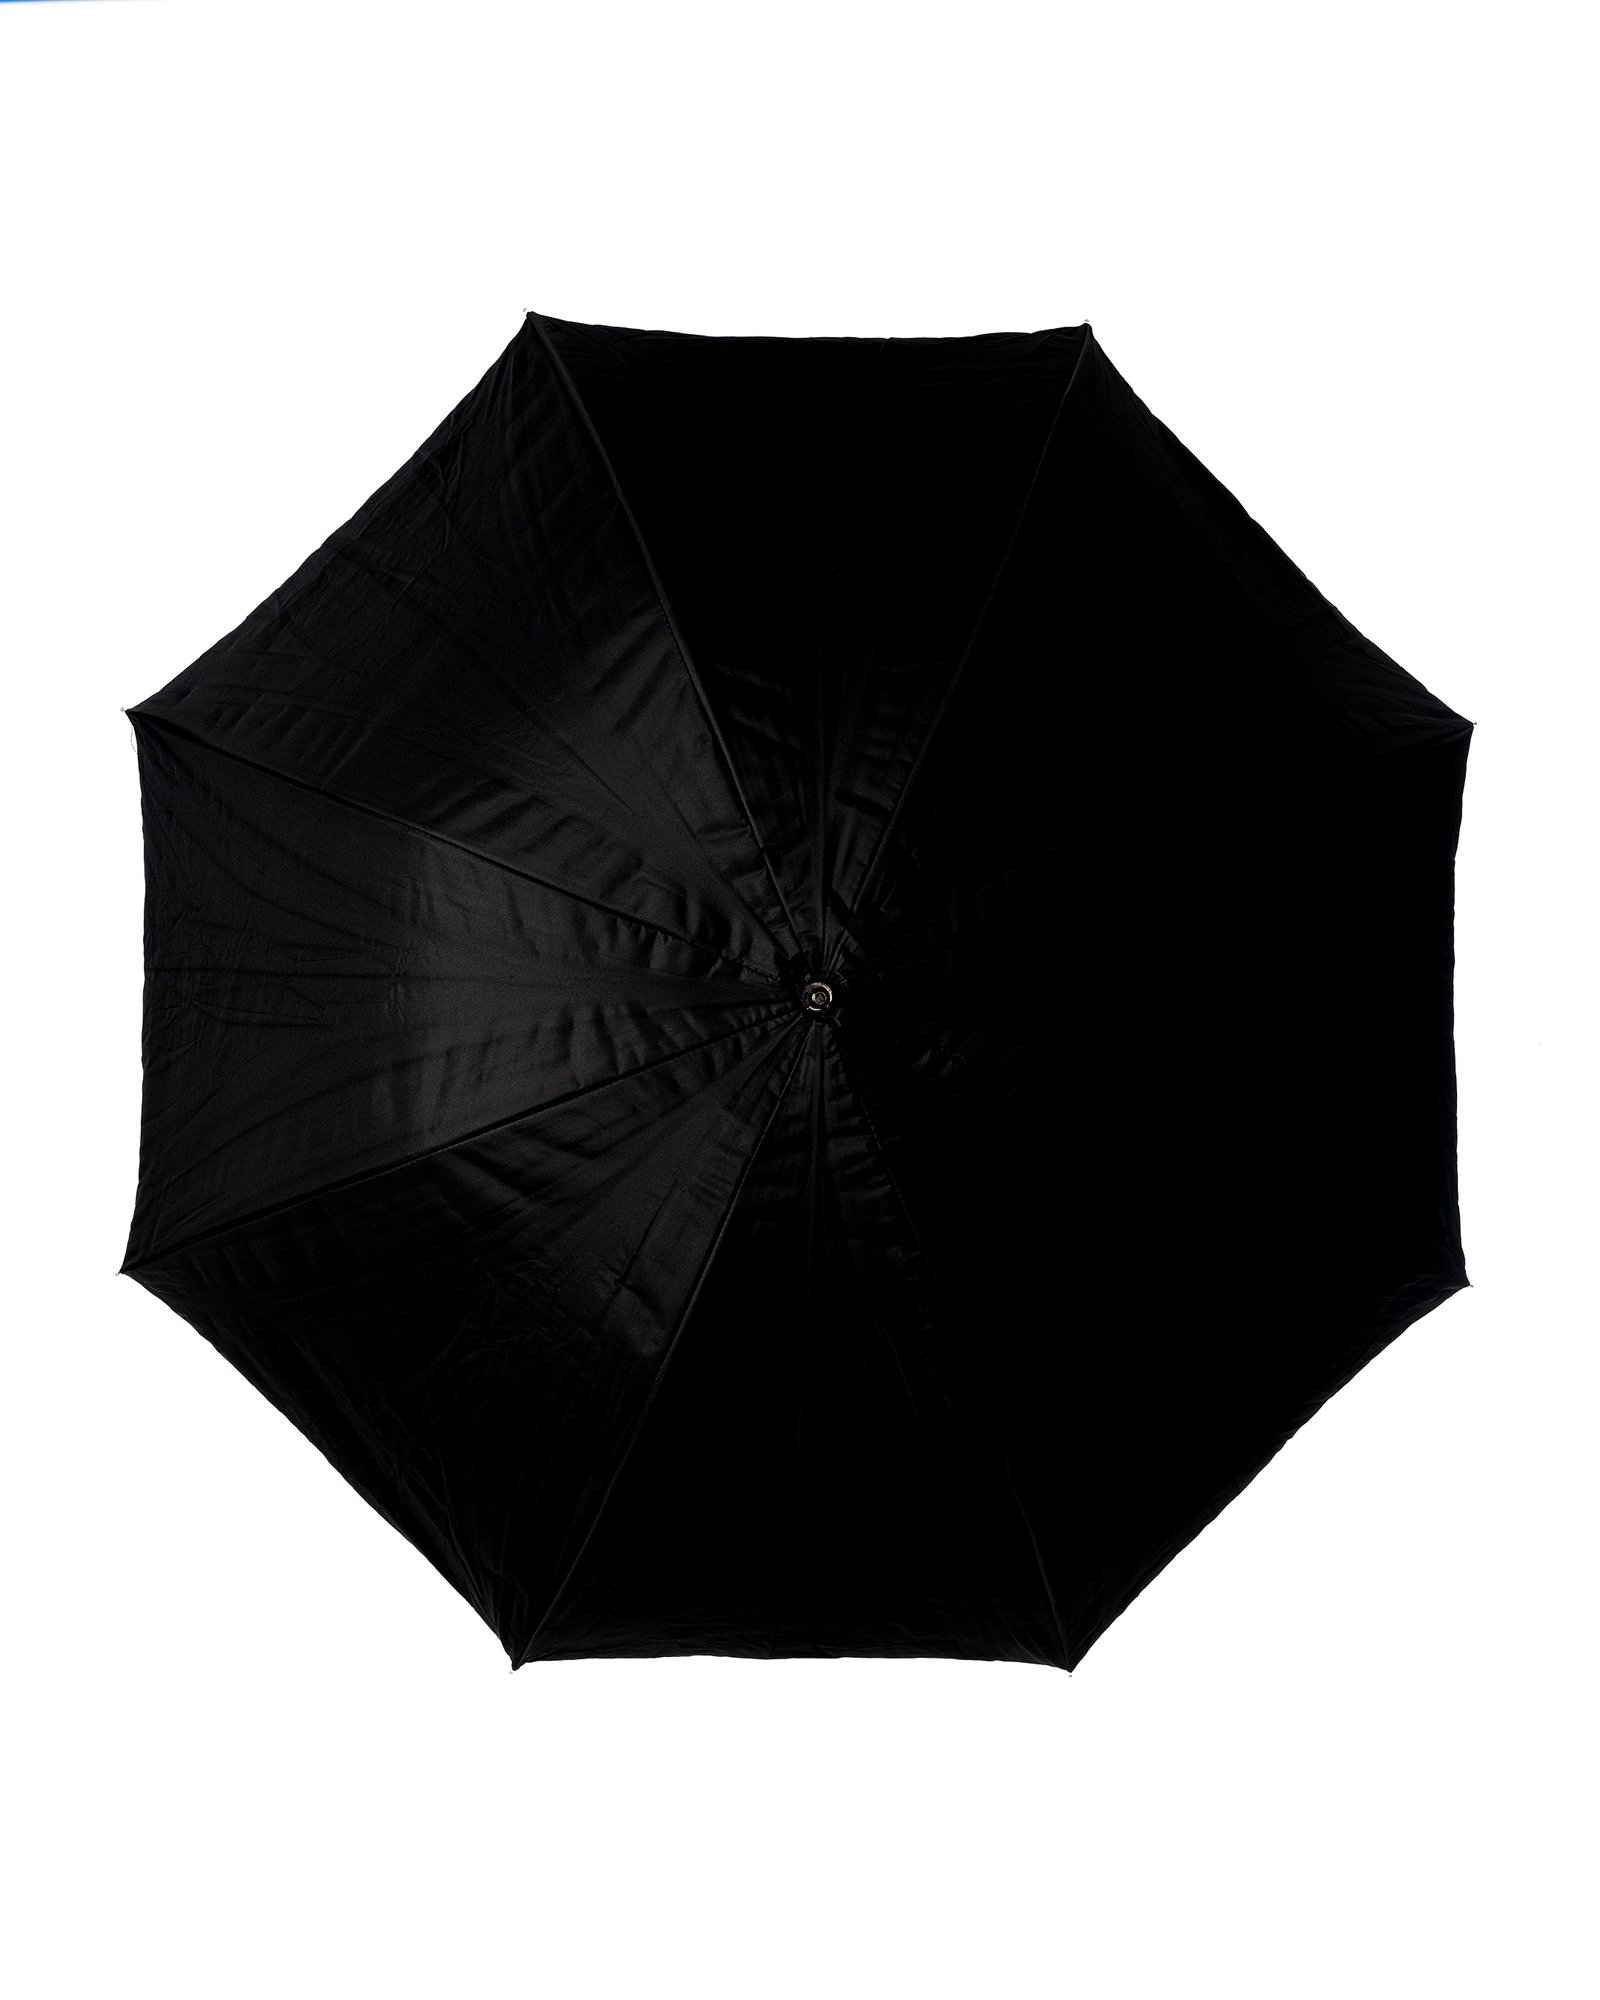 Umbrella Brolly Box